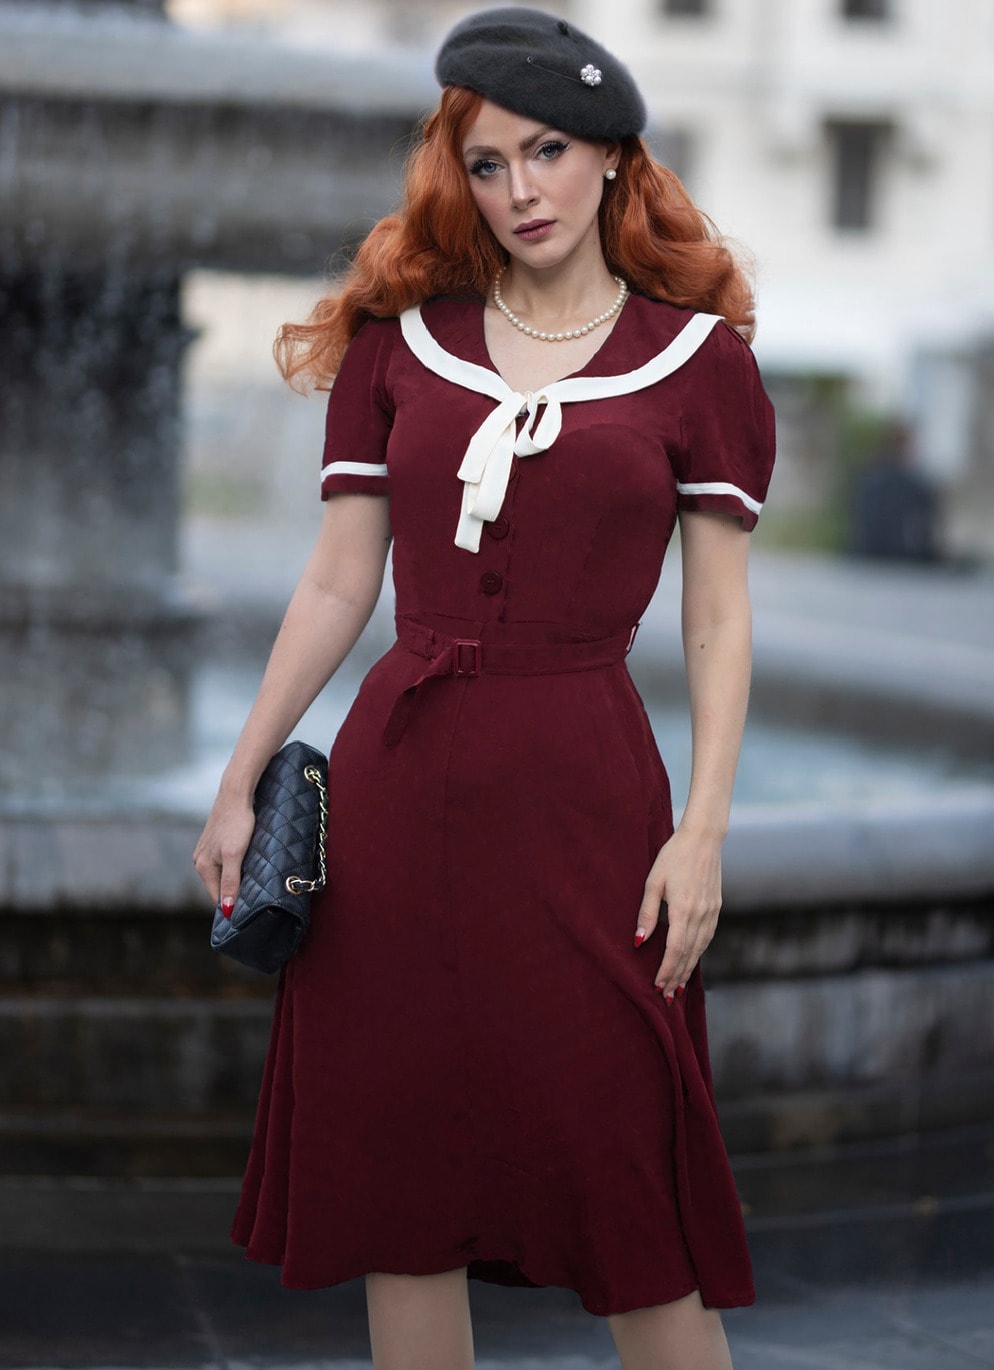 Bloomsbury 40's Vintage Retro A-Linie Swing Kleid "Patty Sailor Dress" in Weinrot 40er Jahre A-Linie ausgestelltes Damenkleid Elegant Stilvoll Büro Office Business